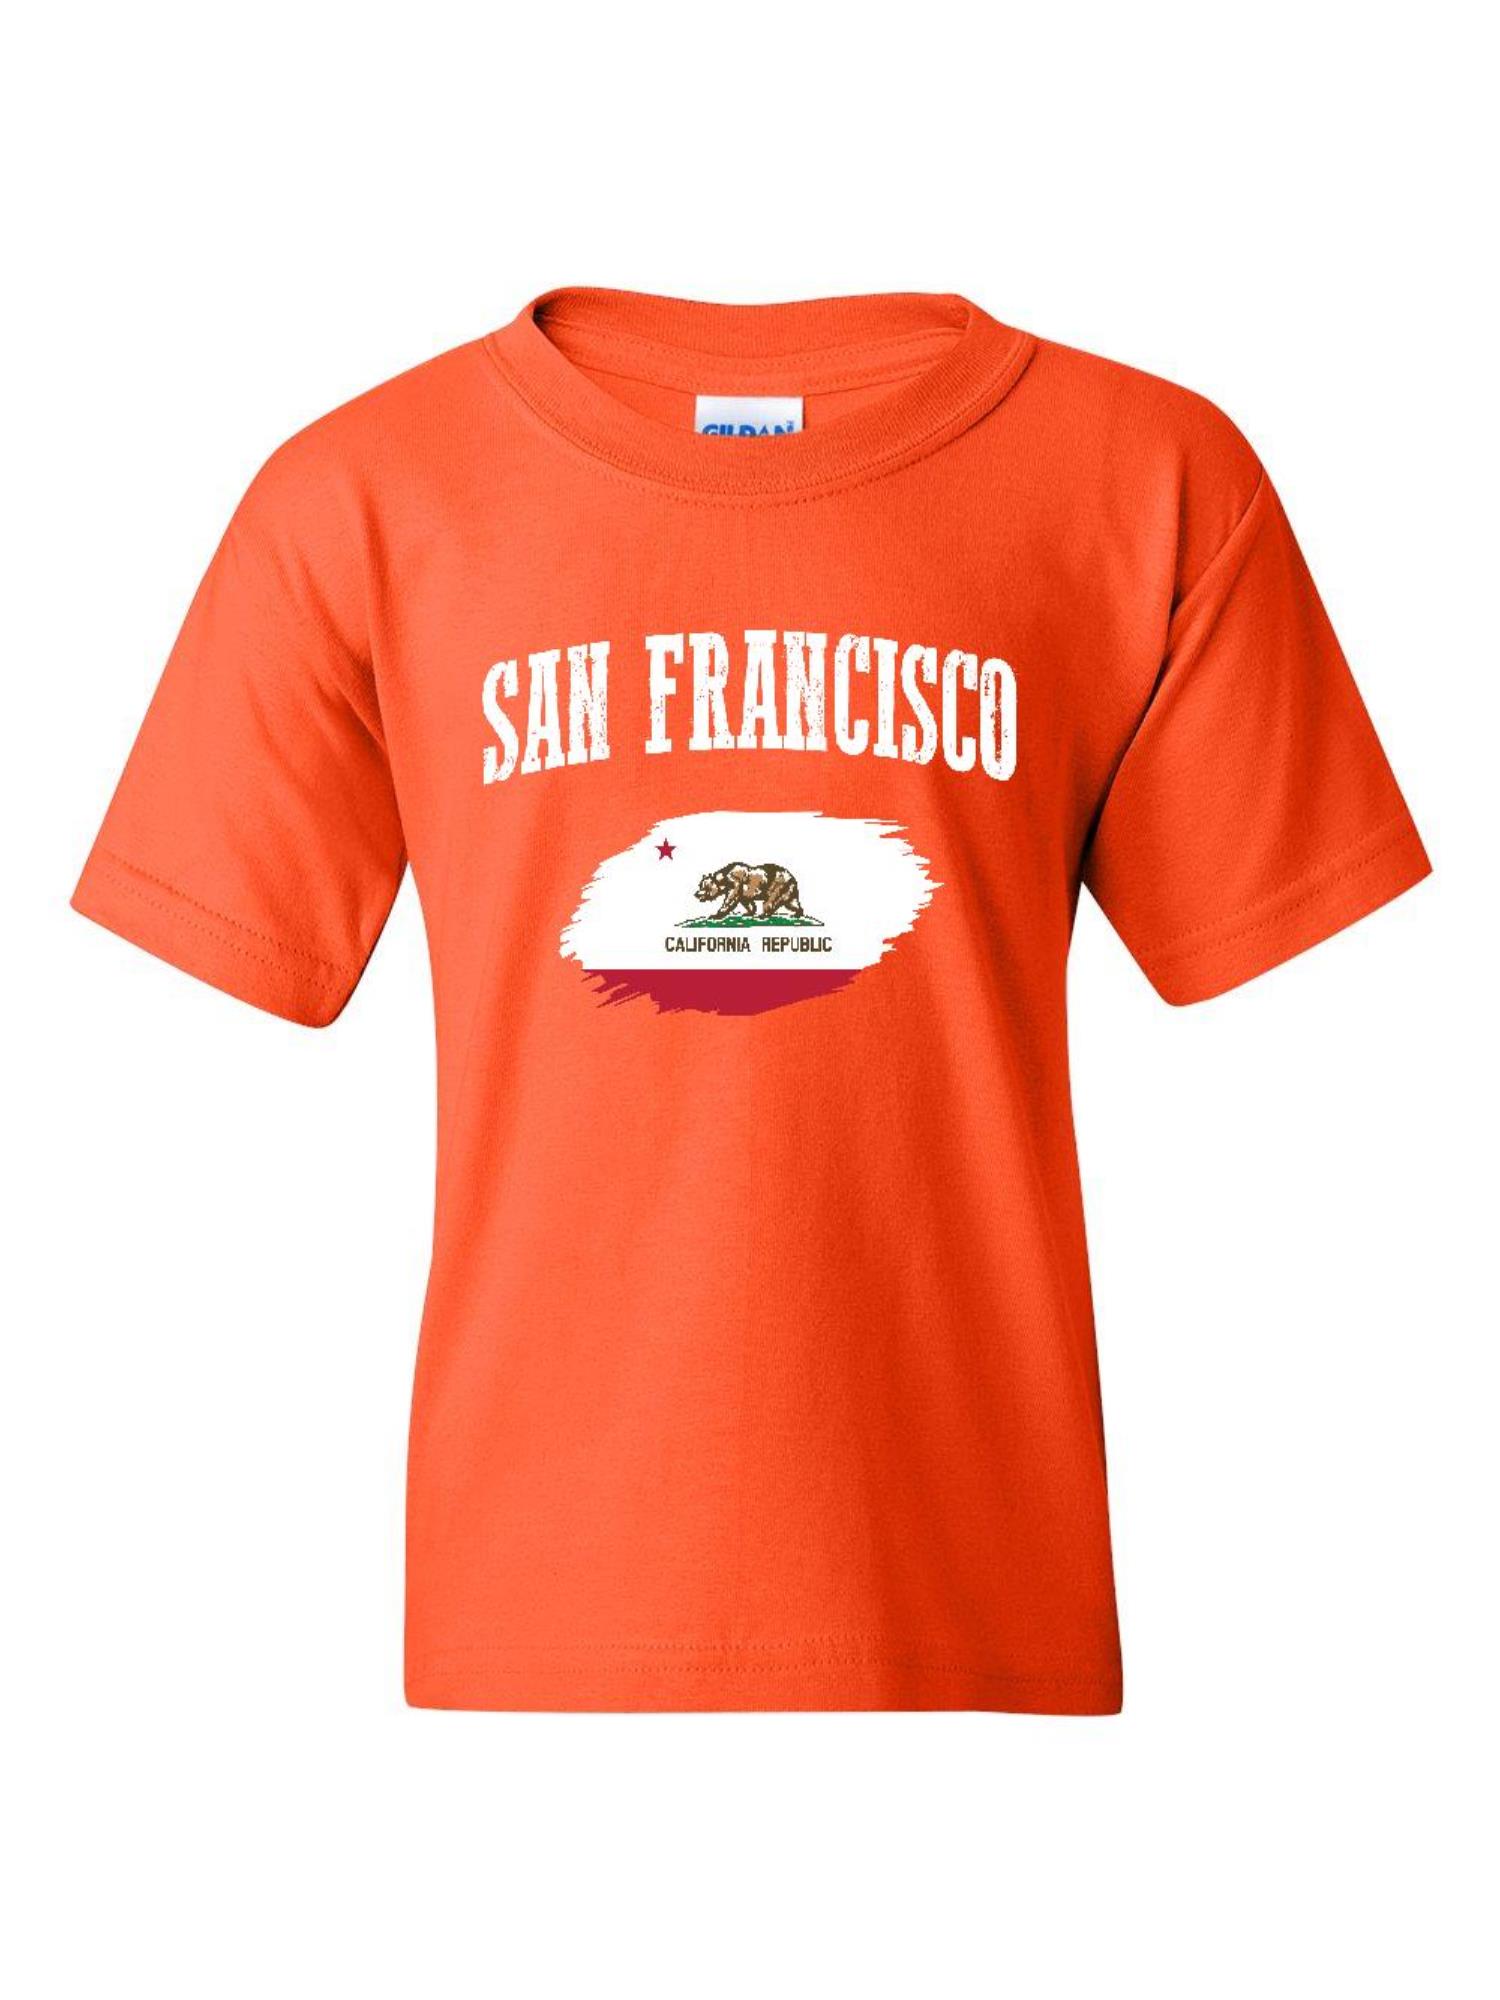 NIB - Big Girls T-Shirts and Tank Tops - San Francisco - image 1 of 5